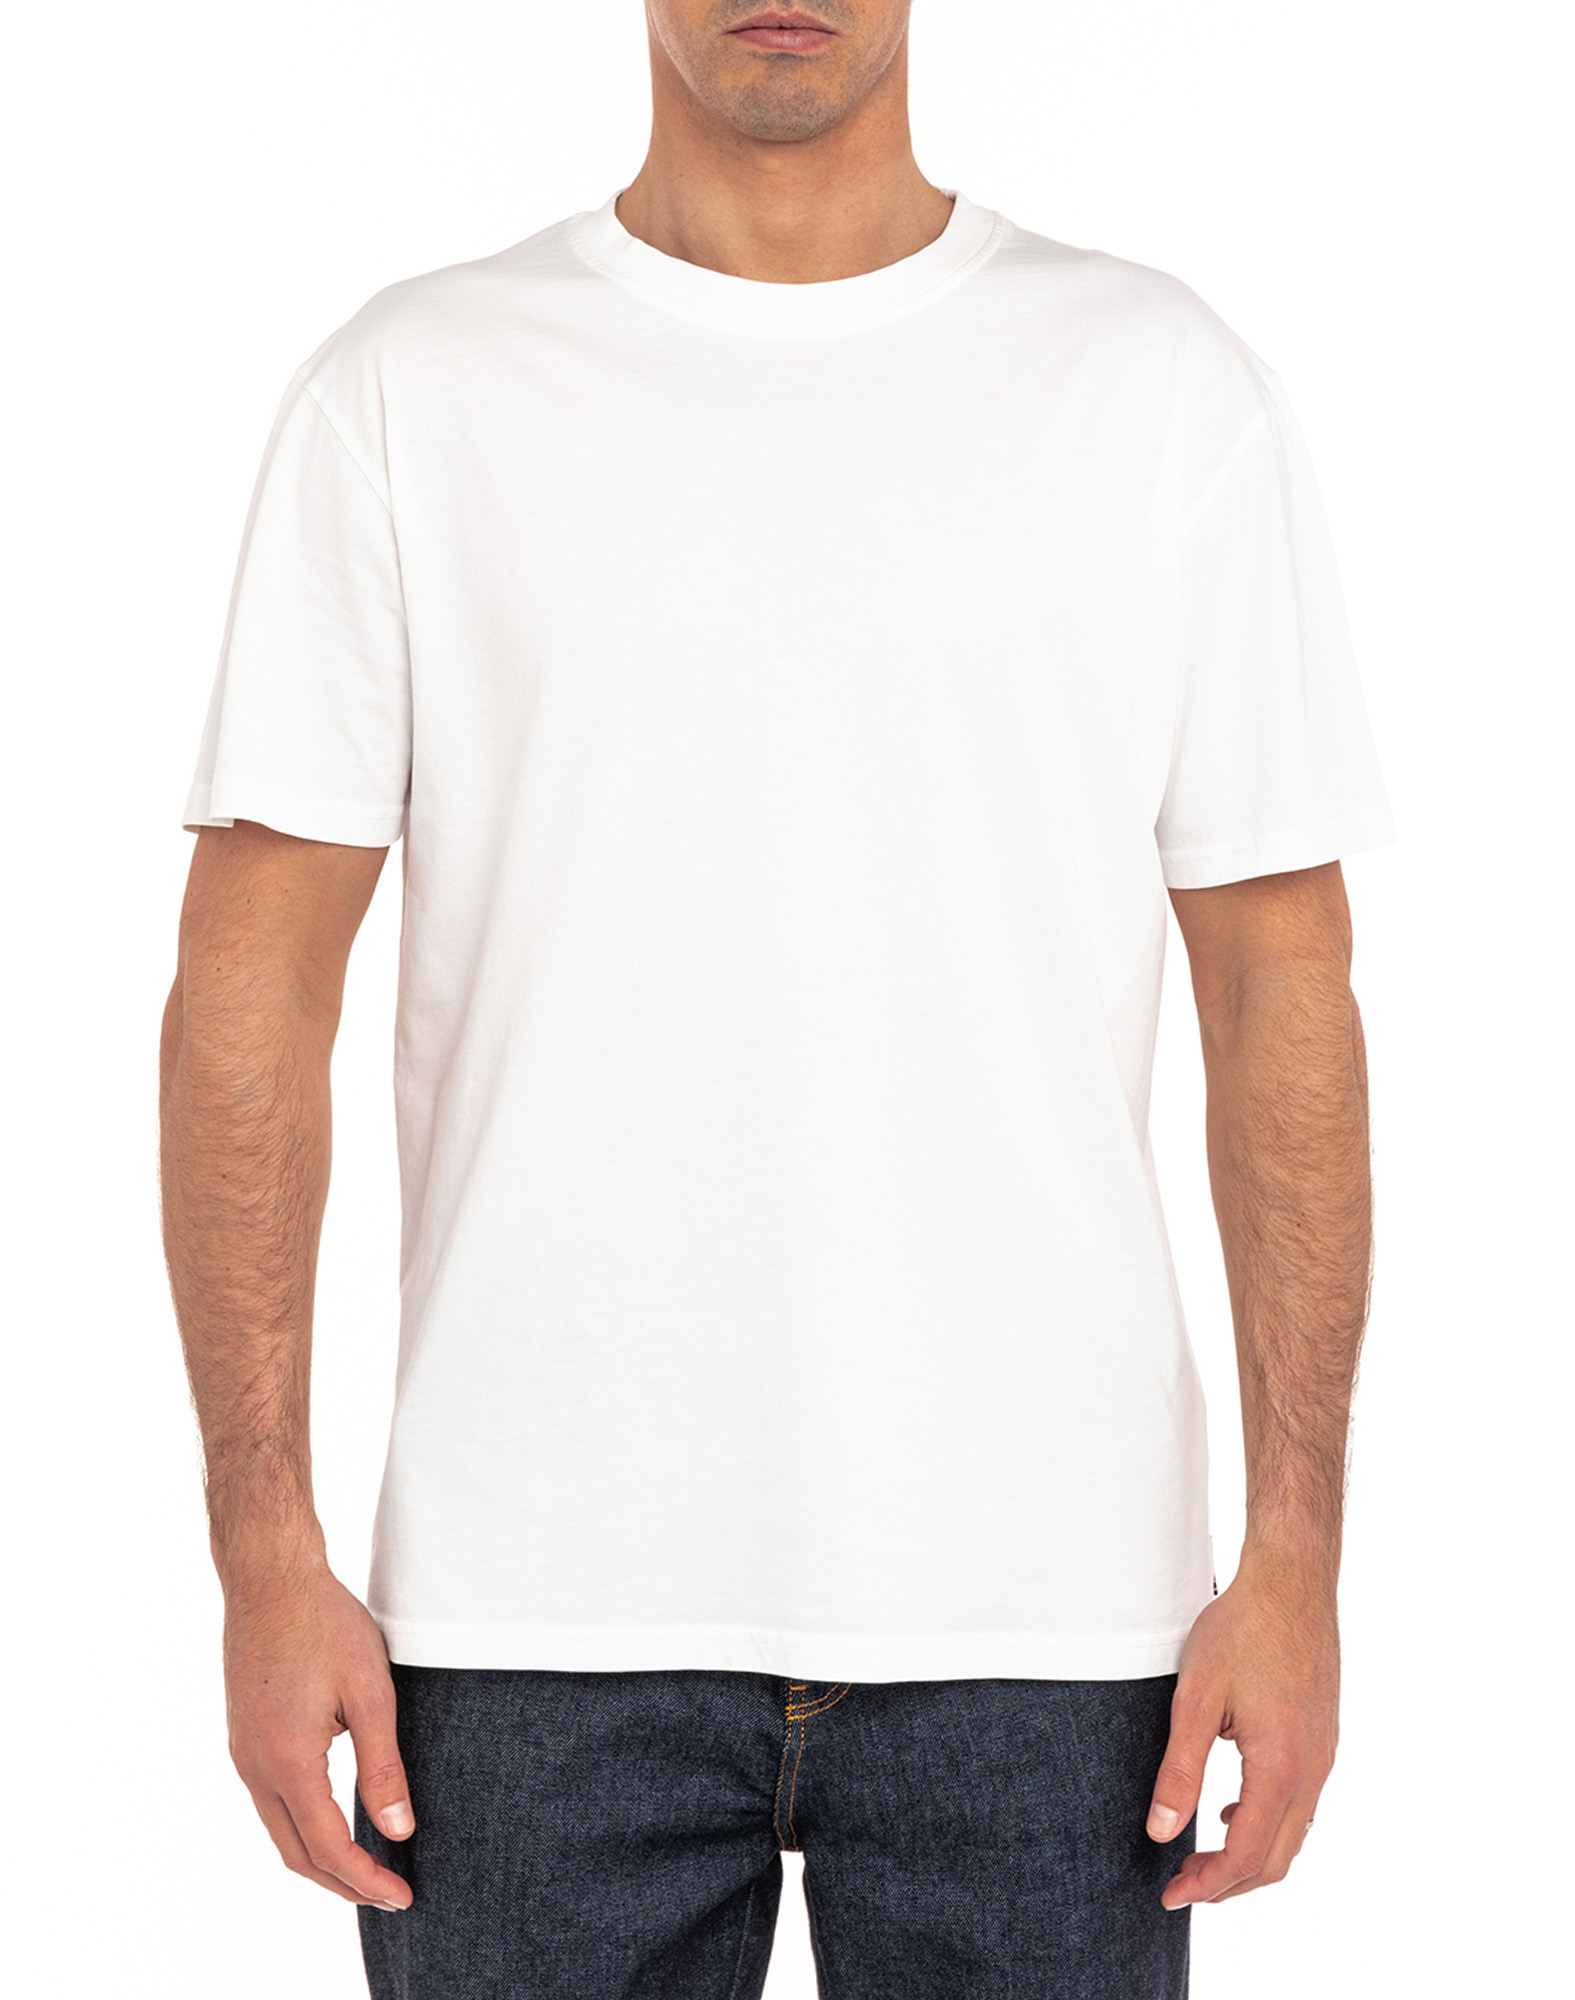 T-Shirt Homme 100% Coton - Blanc